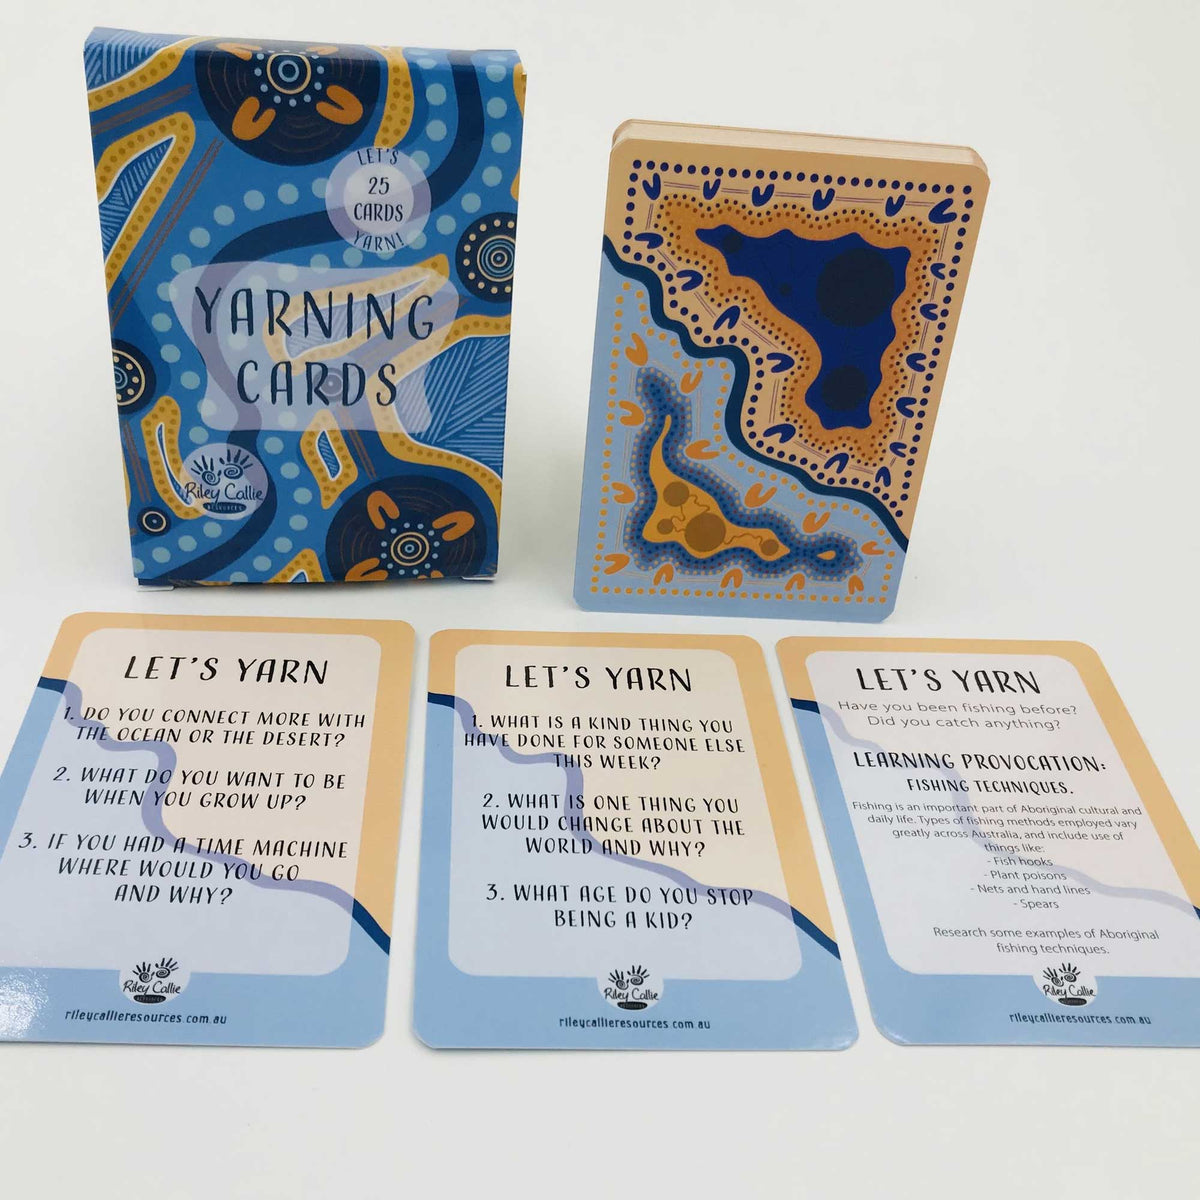 Yarning Cards - Let's Yarn!